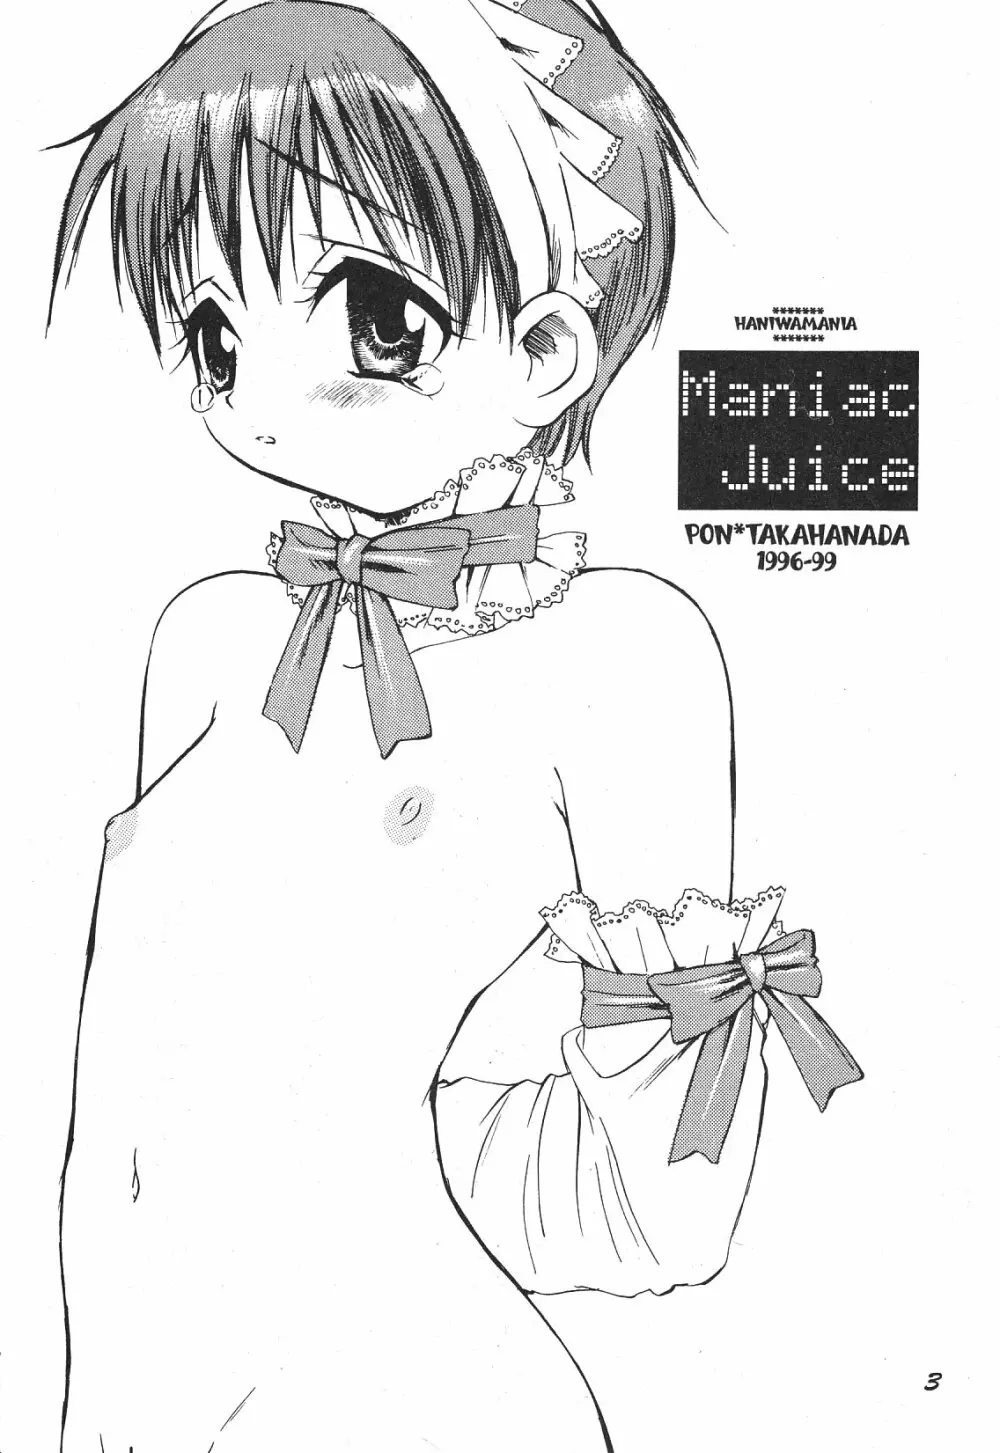 Maniac Juice 女シンジ再録集 ’96-’99 3ページ